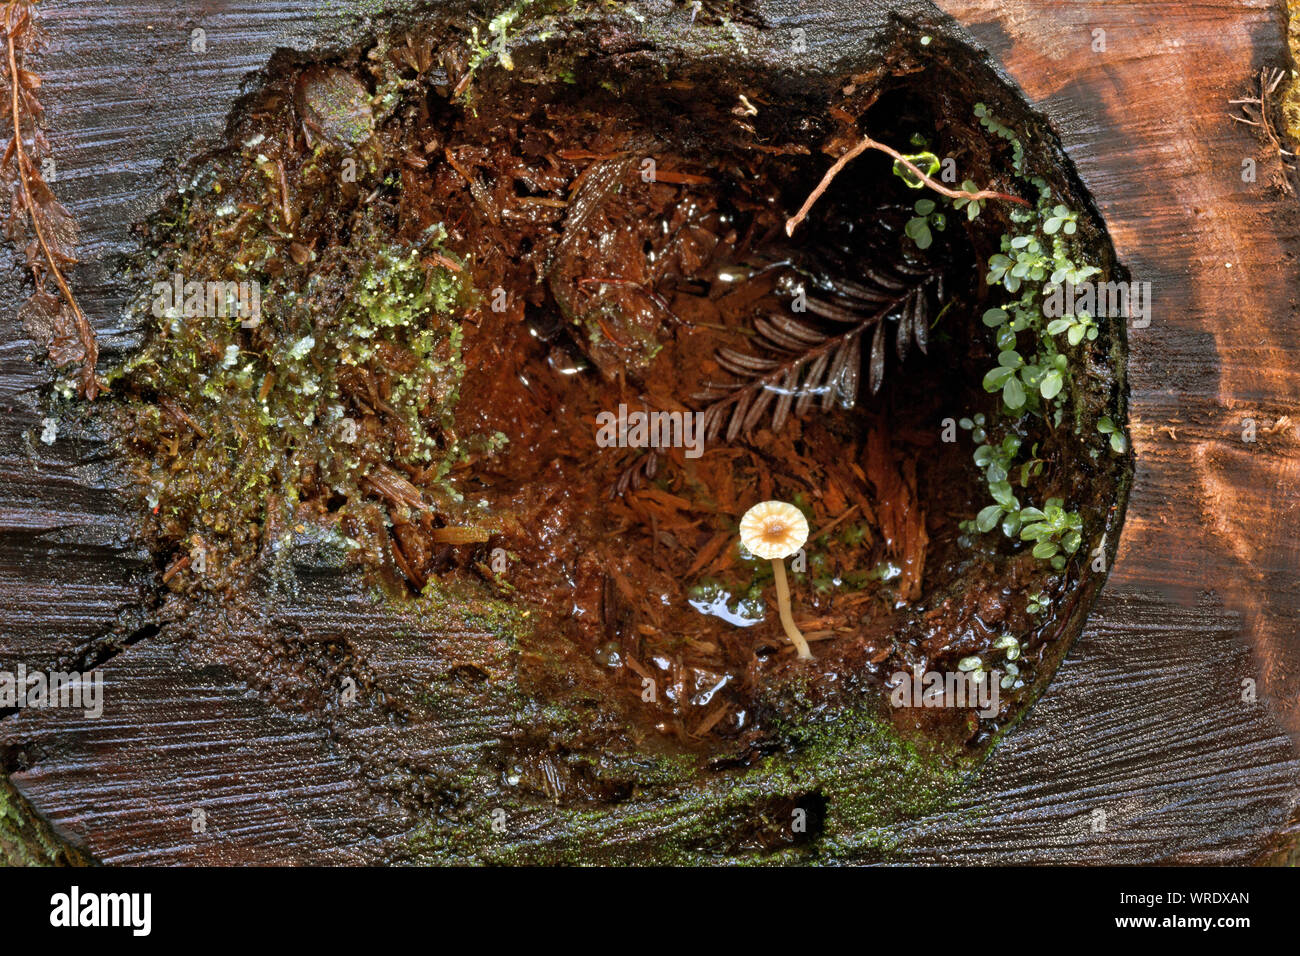 CA03523-00...CALIFORNIA - una formata naturalmente terrarium di muschio,piante,alge, e un fungo che cresce in un log tagliato lungo il lato del Brown Creek Tr. Foto Stock